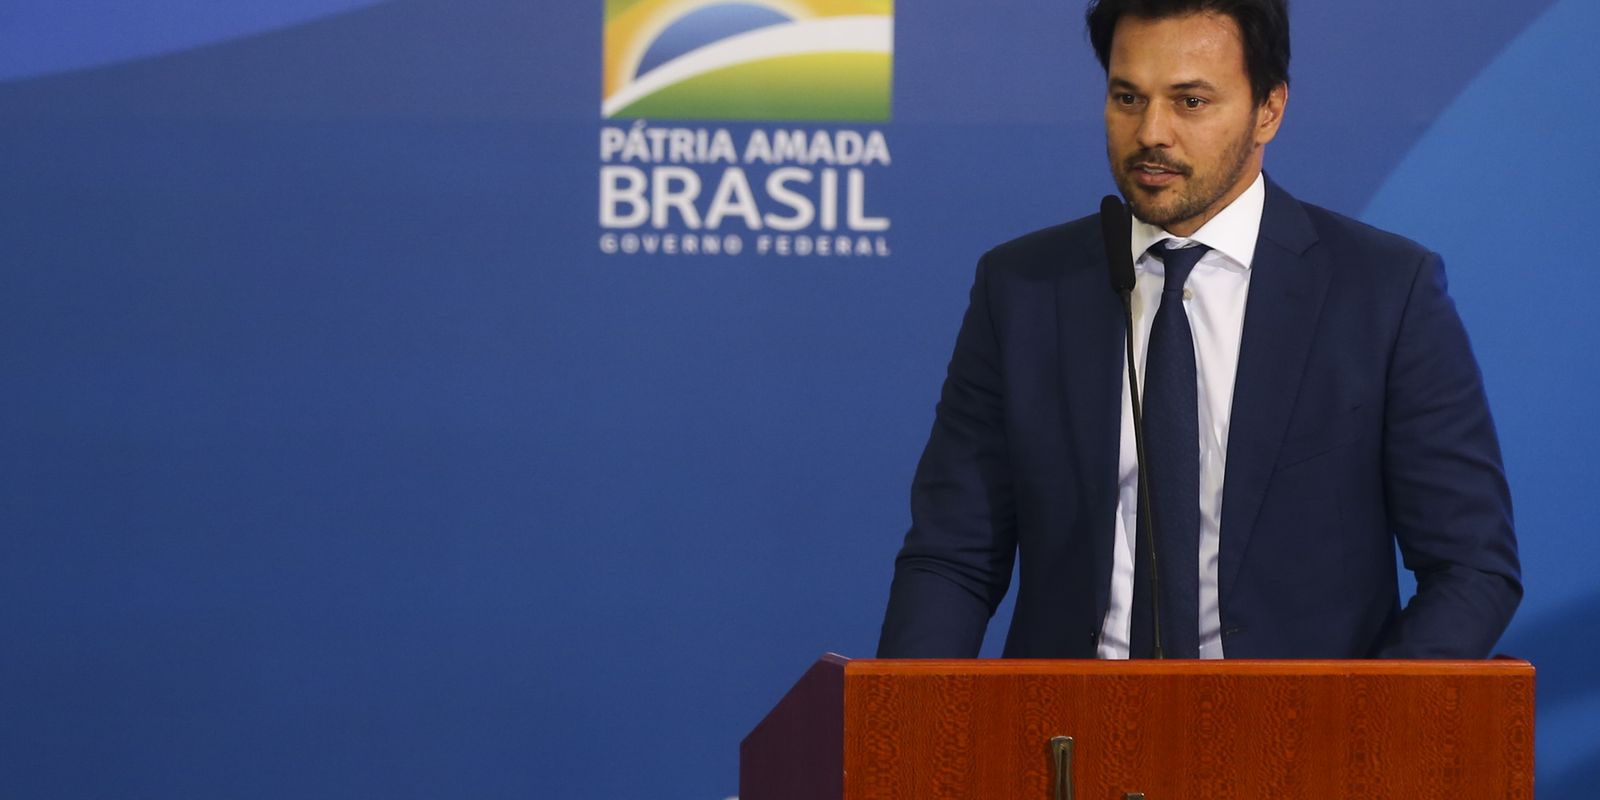 O ministro das Comunicações, Fábio Faria participa da cerimônia para apresentar a meta de instalação de novos 12 mil pontos de Wi-Fi Brasil em escolas da rede pública no país.